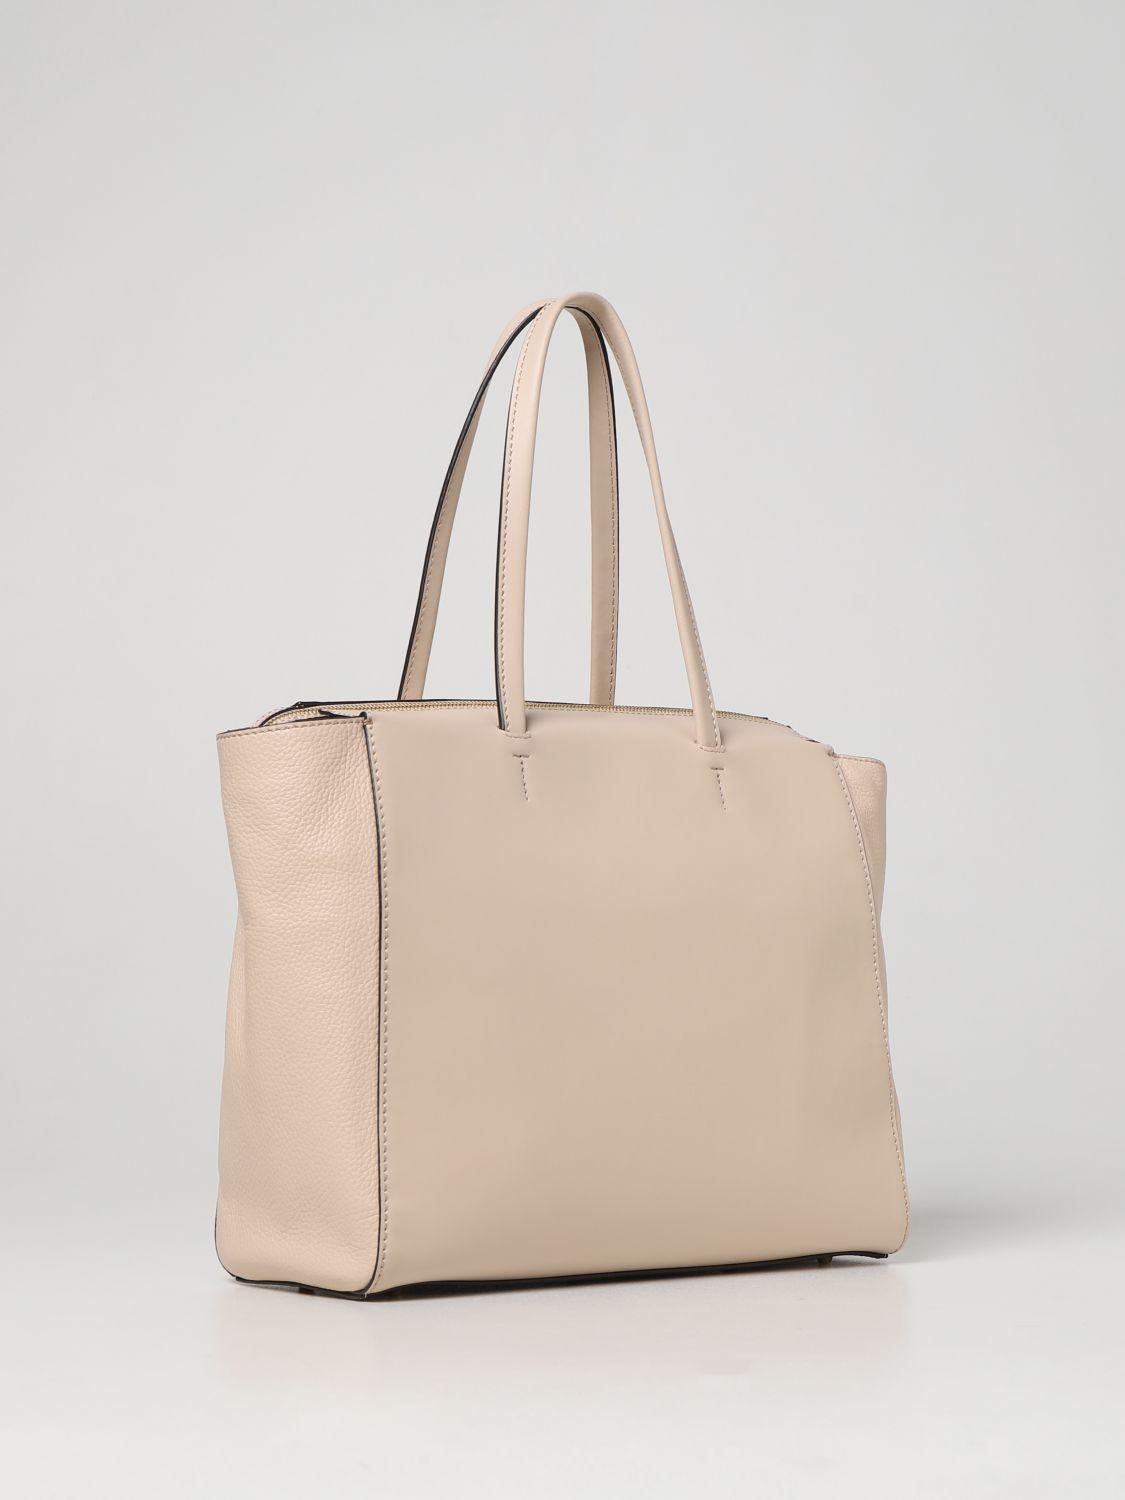 Furla, Bags, New Furla Light Brown Tote Handbag